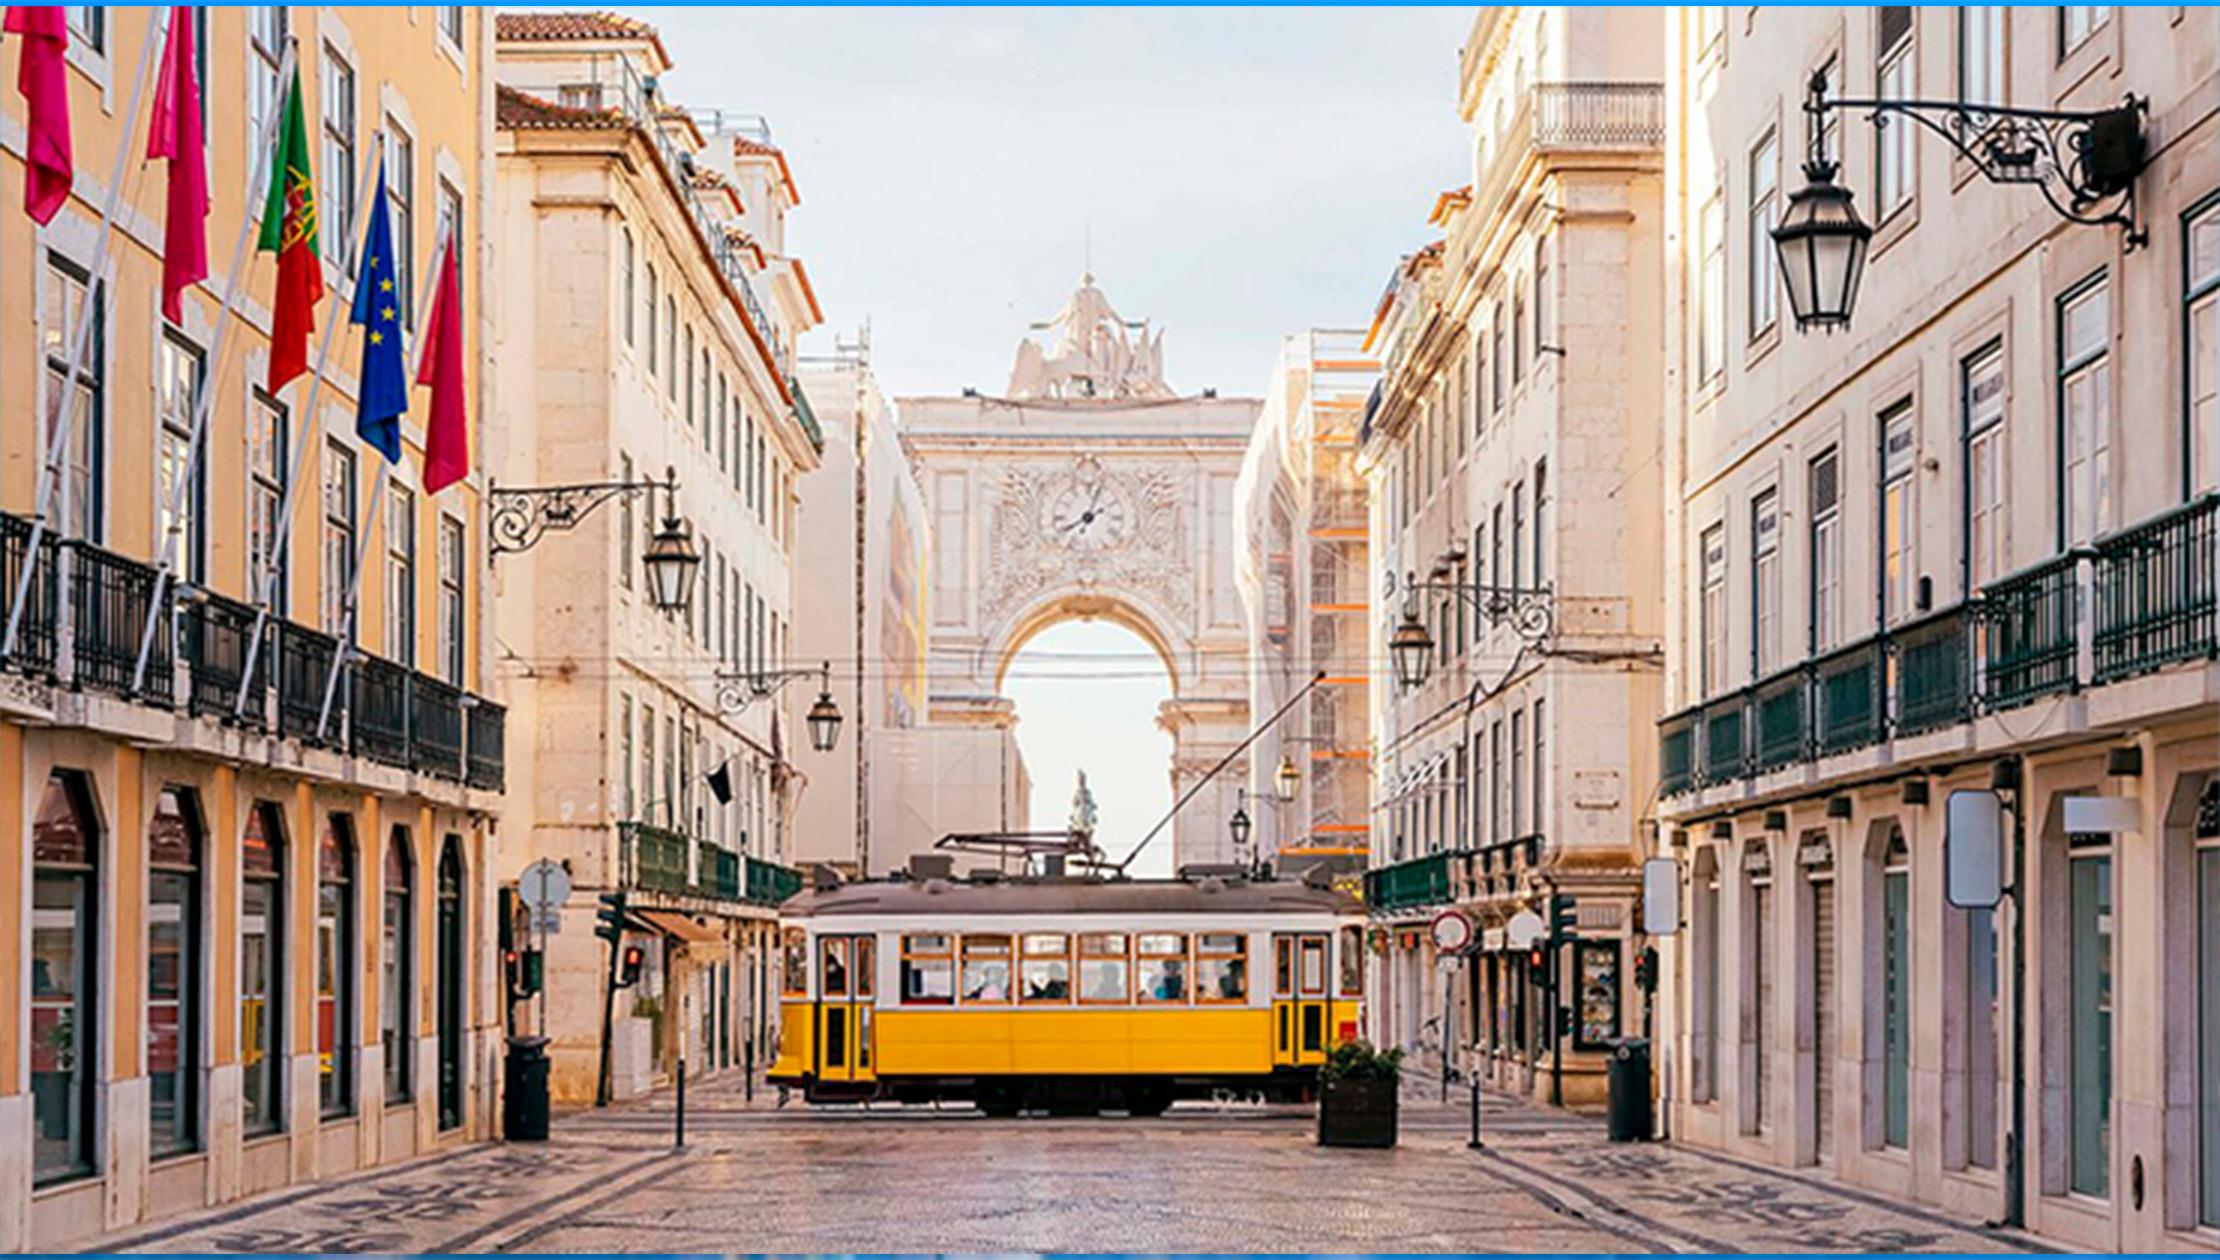 The Unforgettable Lisbon Center Free Tour